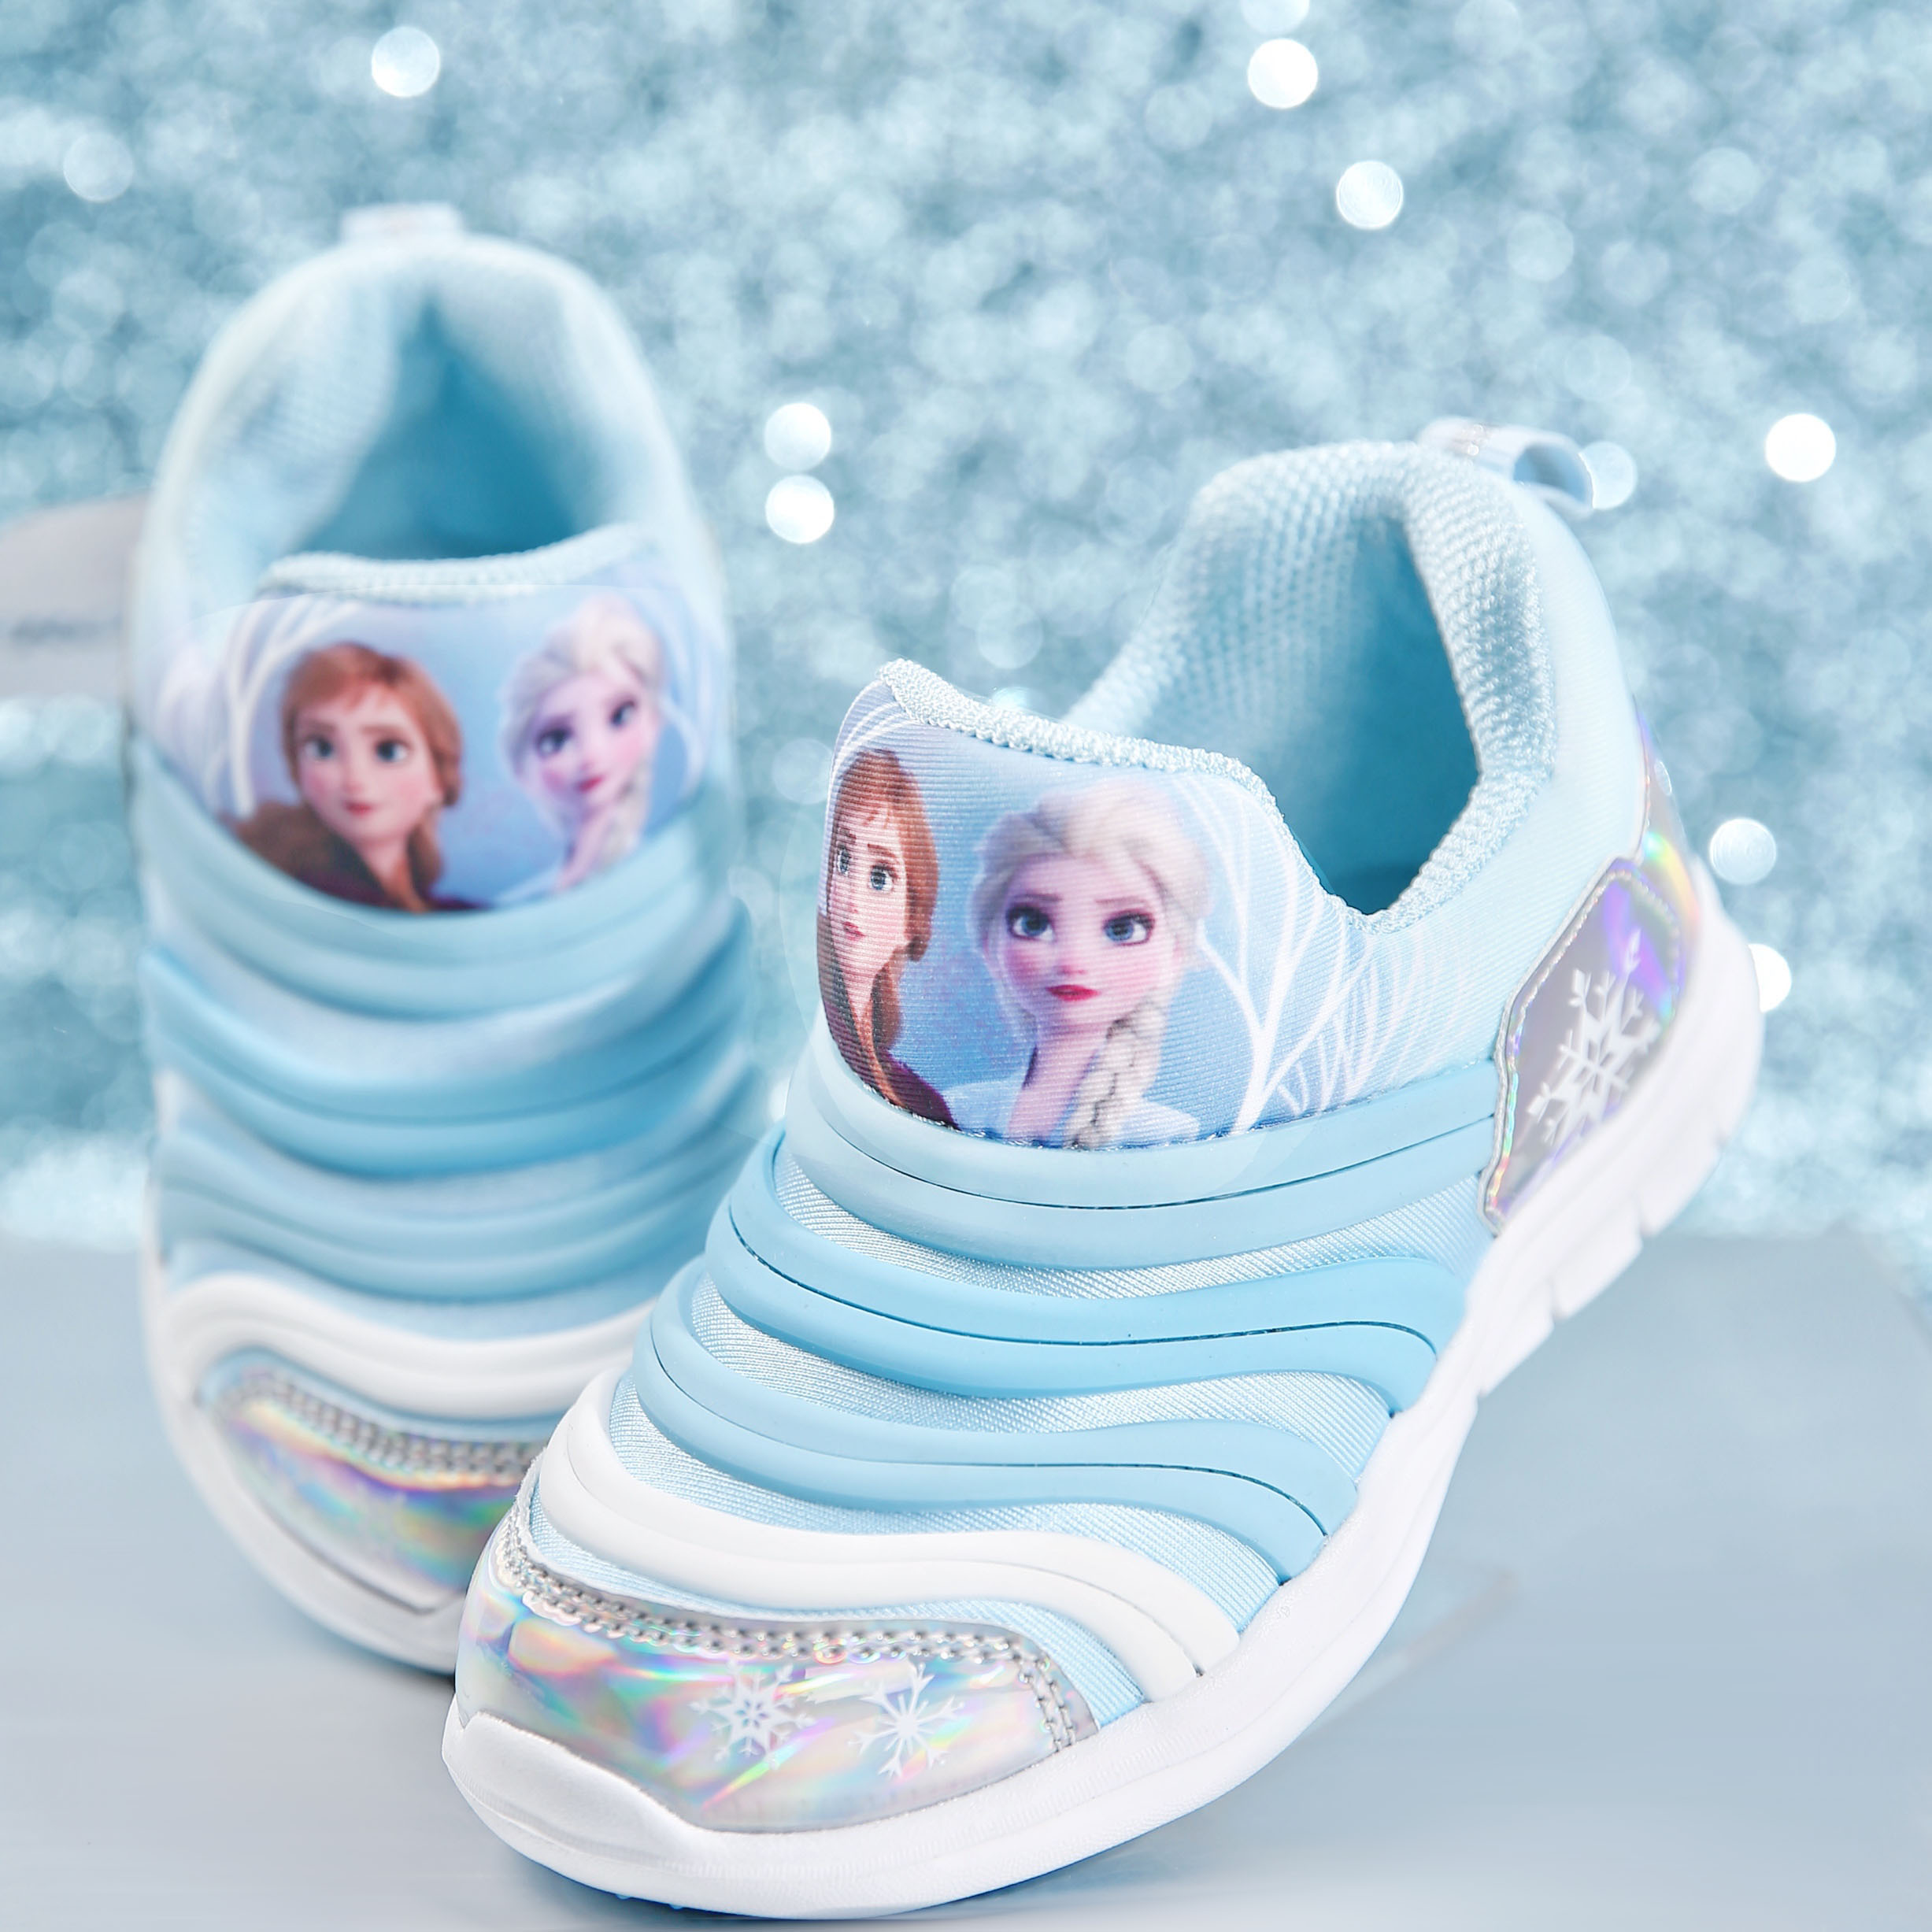 迪士尼冰雪奇缘新款童鞋艾莎运动鞋爱莎公主运动鞋透气防滑运动鞋